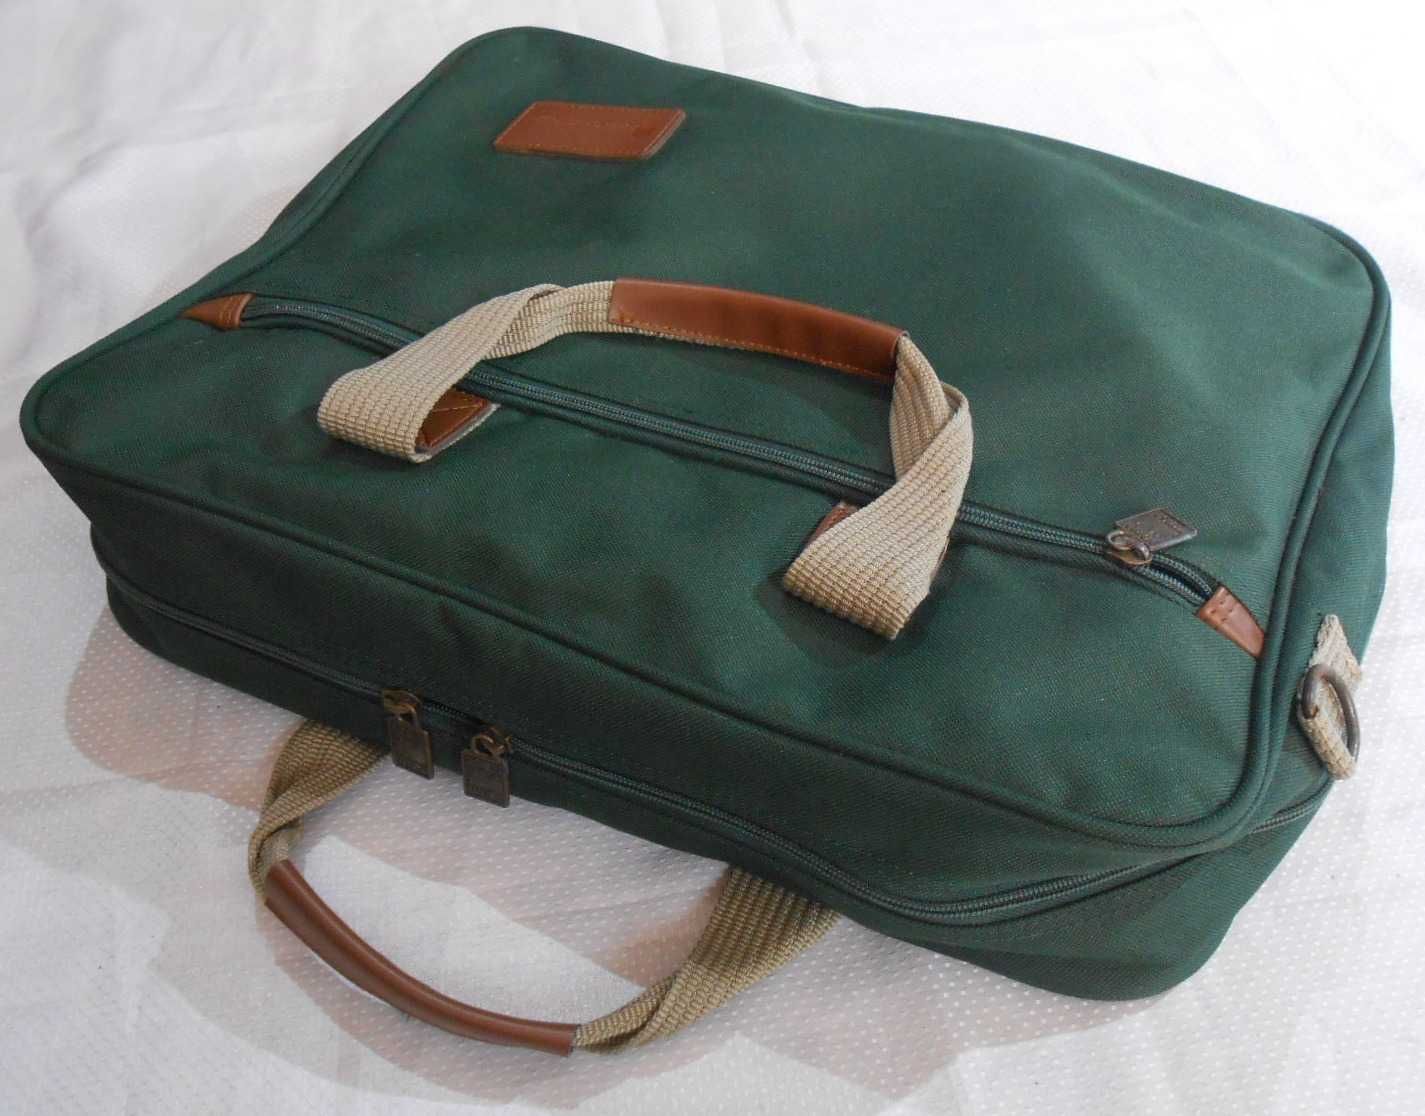 Leed's США бизнес сумка портфель органайзер с ручками для ноутбука